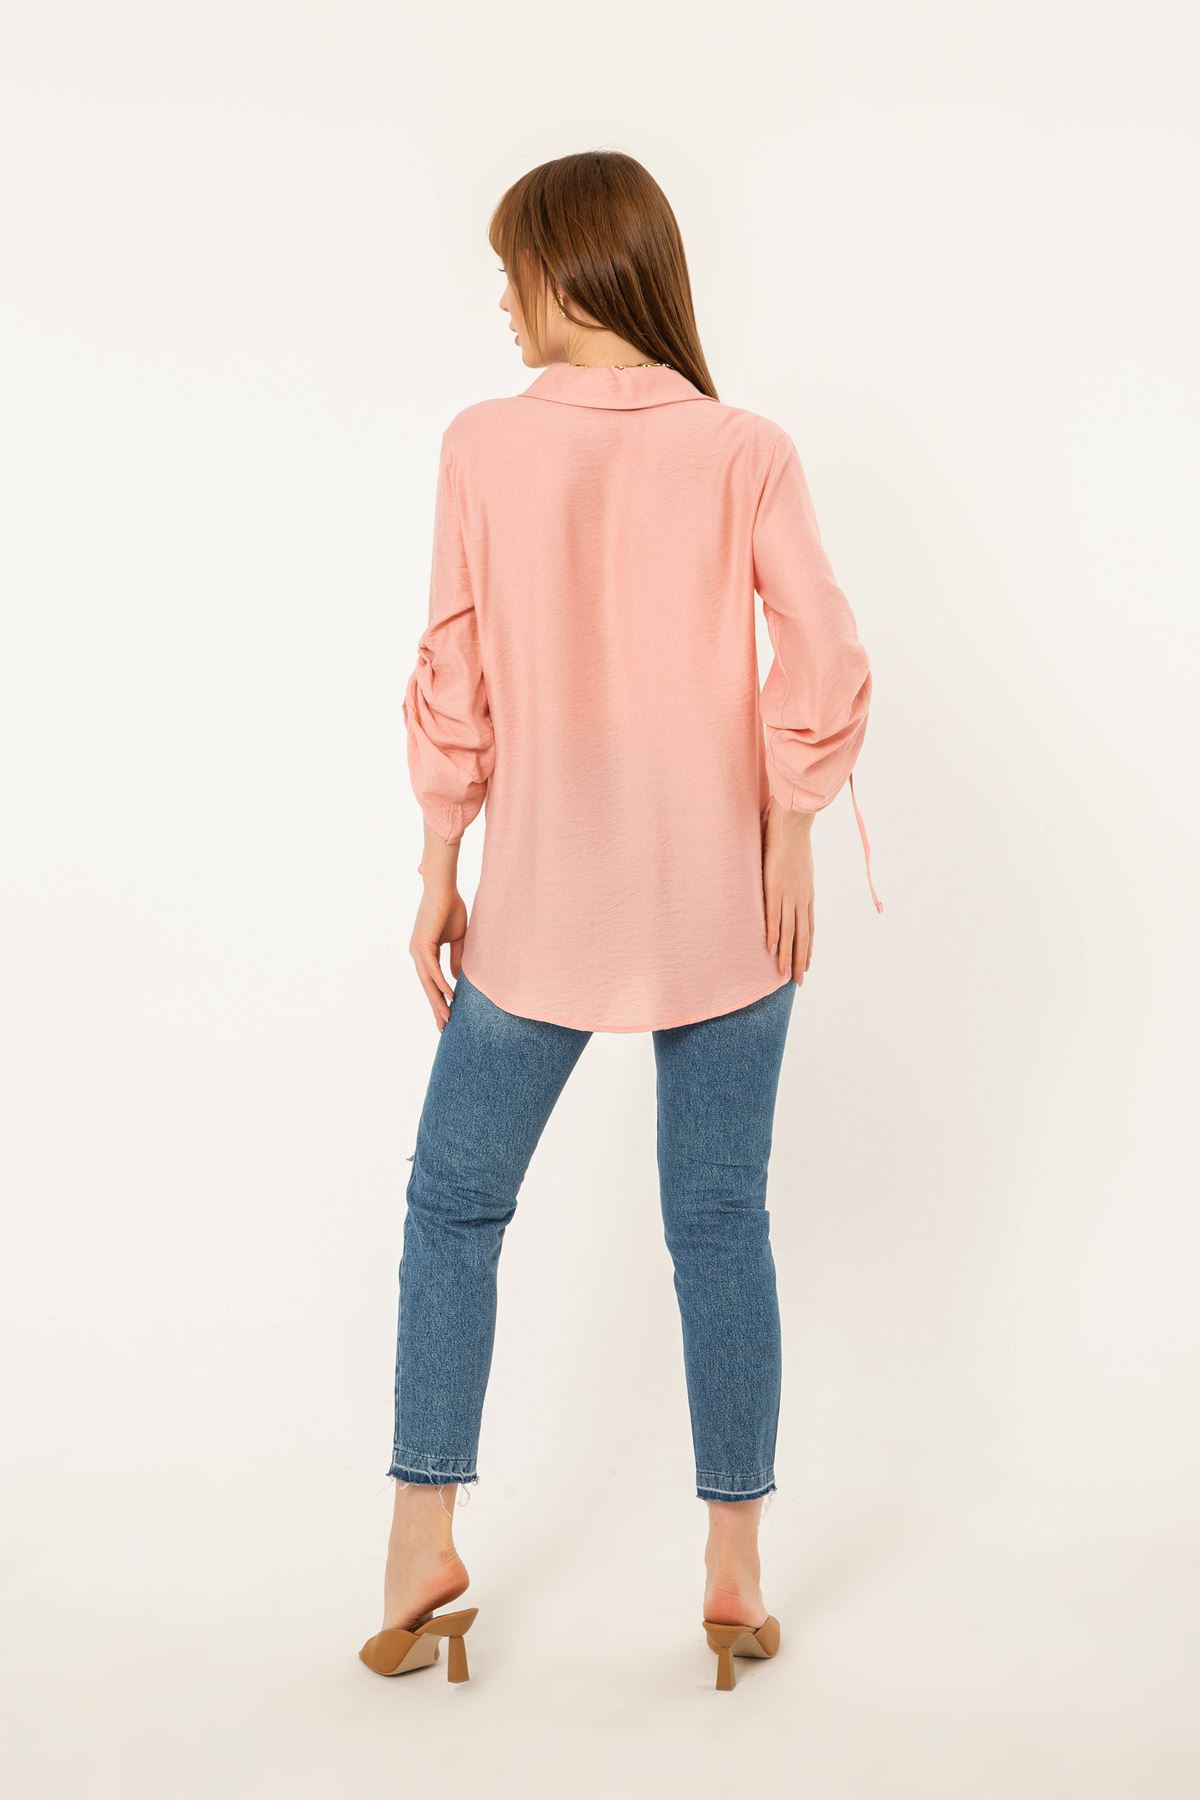 Linen Fabric Sleeve Detailed Oversize Women Shirt - Light Pink